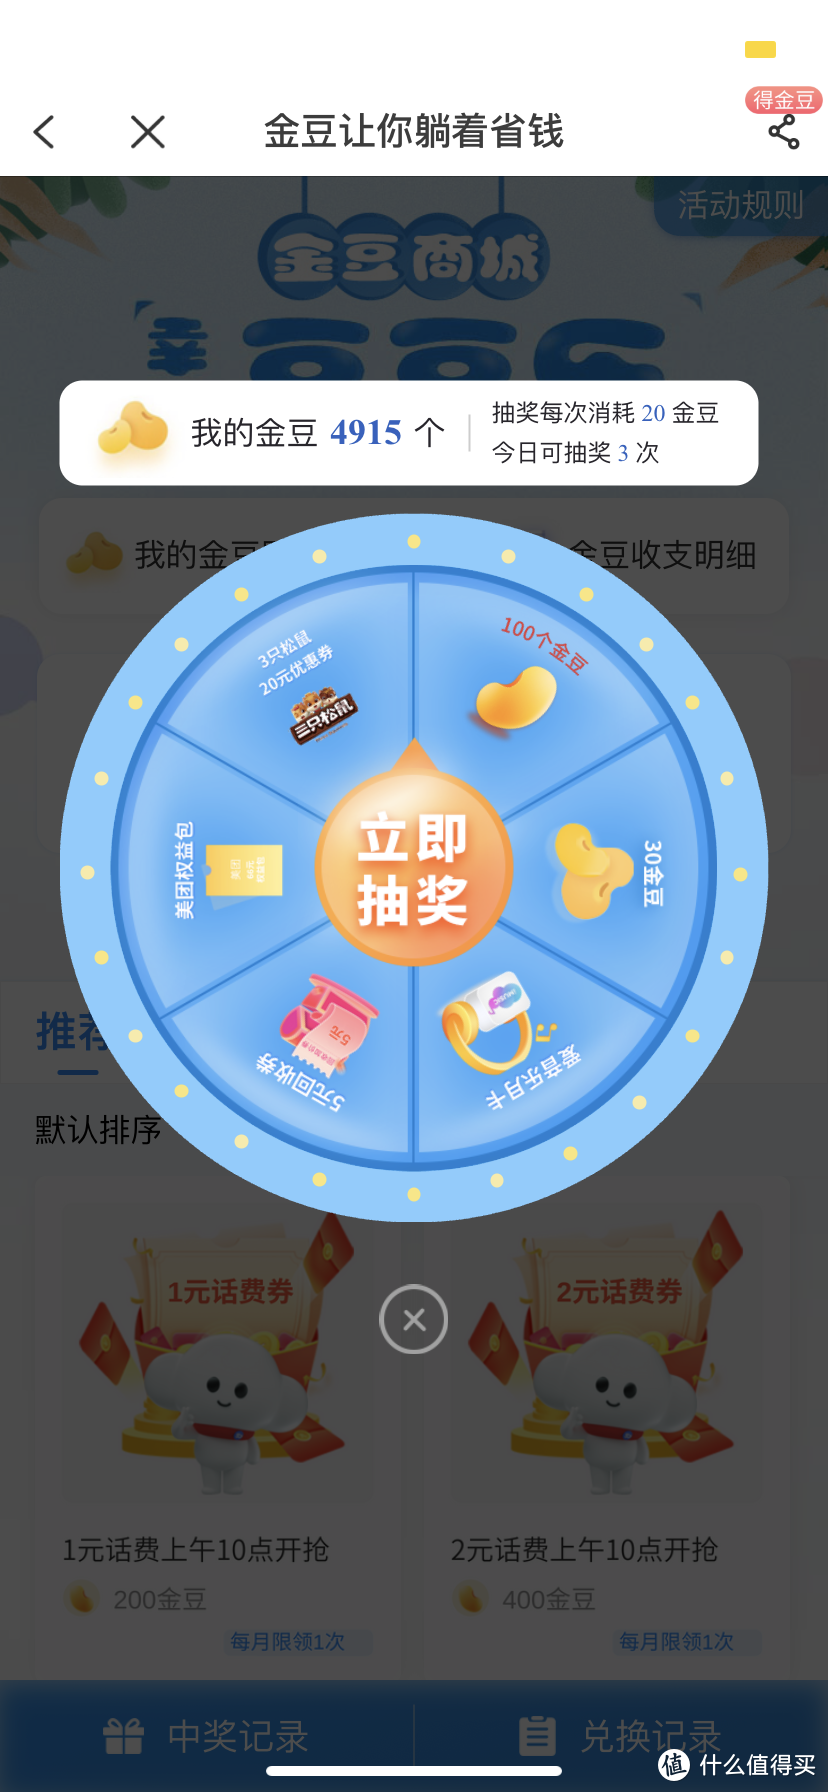 中国电信App签到有好礼